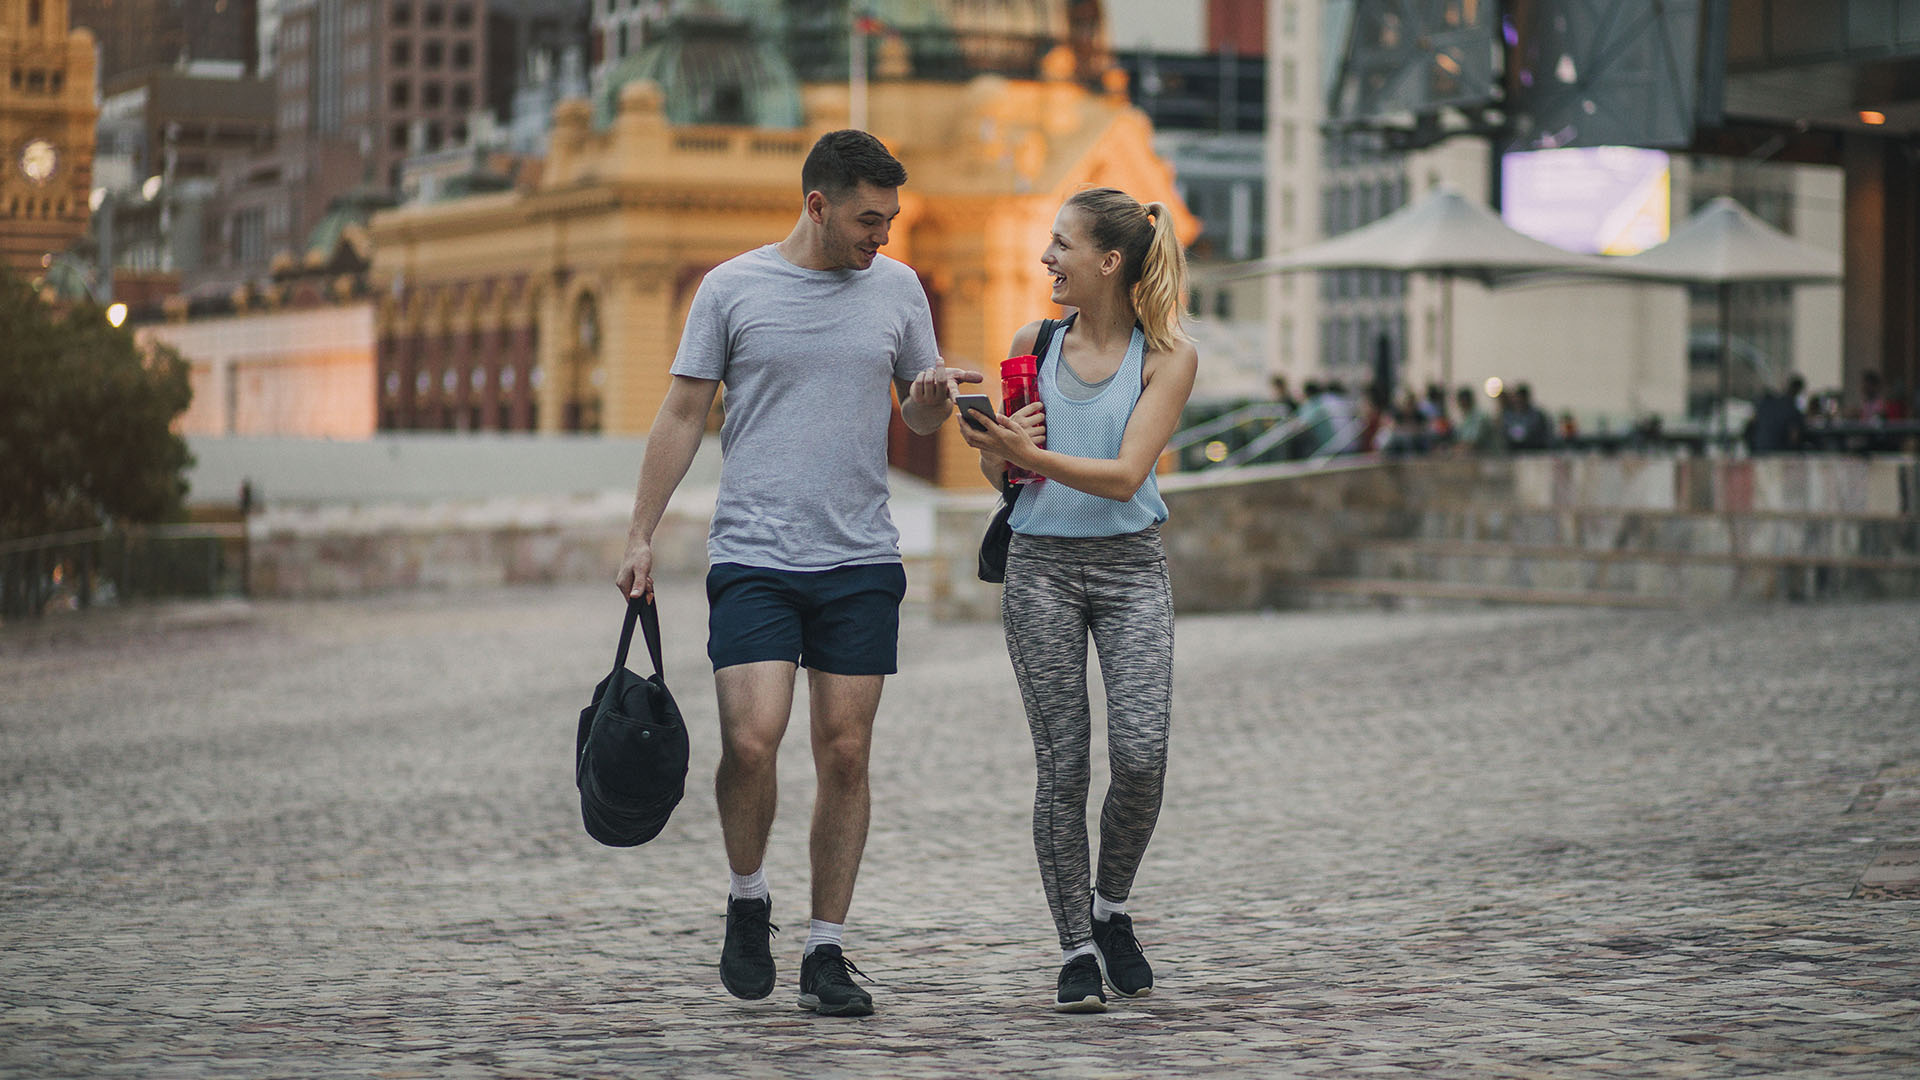 Caminar ayuda a mantener un peso saludable, a controlar el metabolismo, la presión arterial y el colesterol (Getty Images)